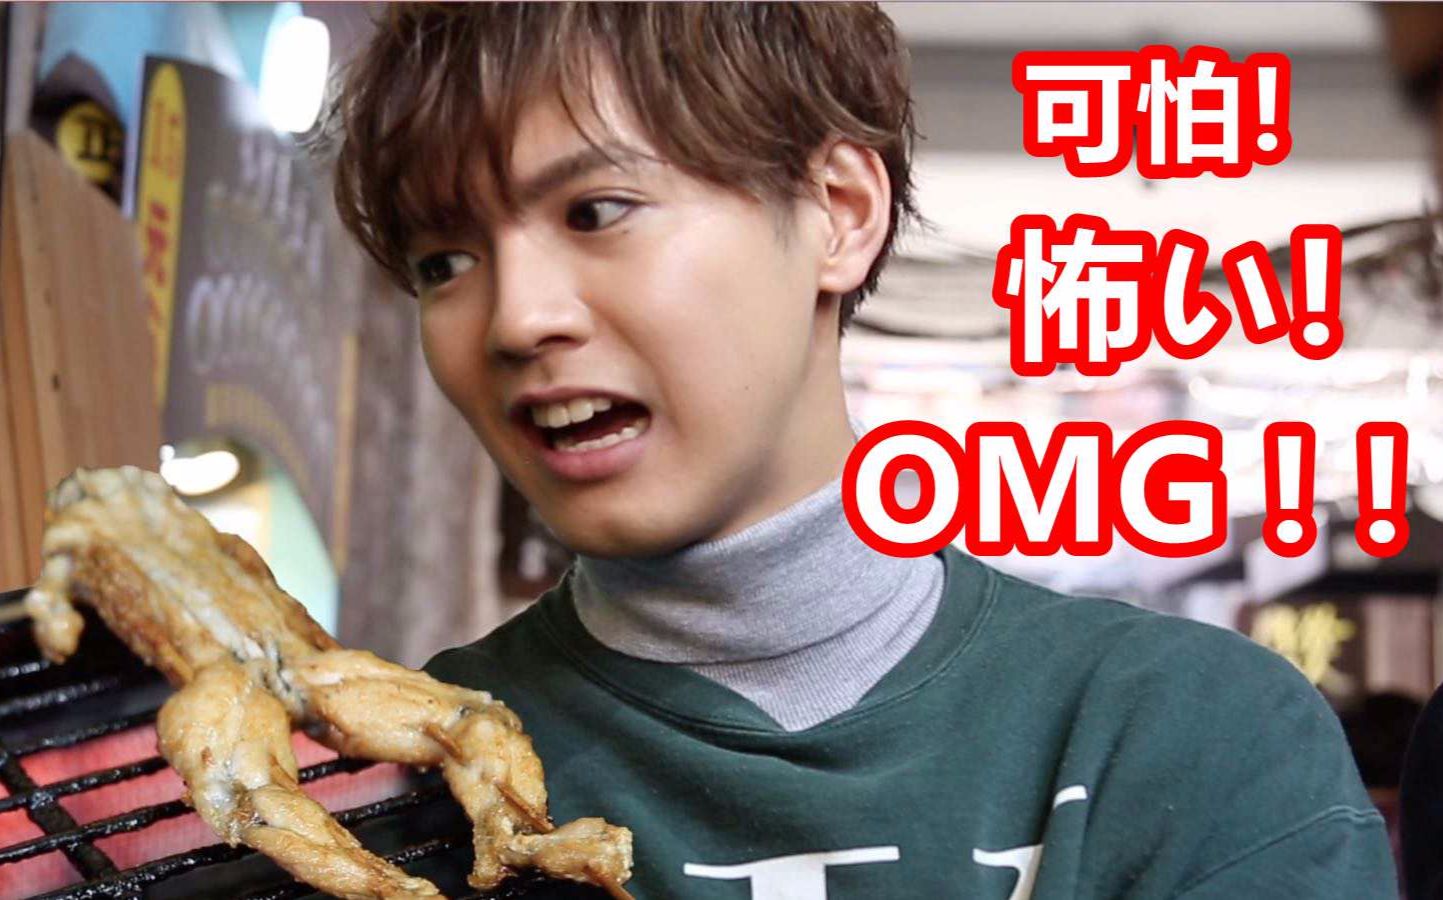 中国街头美食烤牛蛙竟让日本大热明星片寄凉太“花容失色”【我住在这里的理由106】